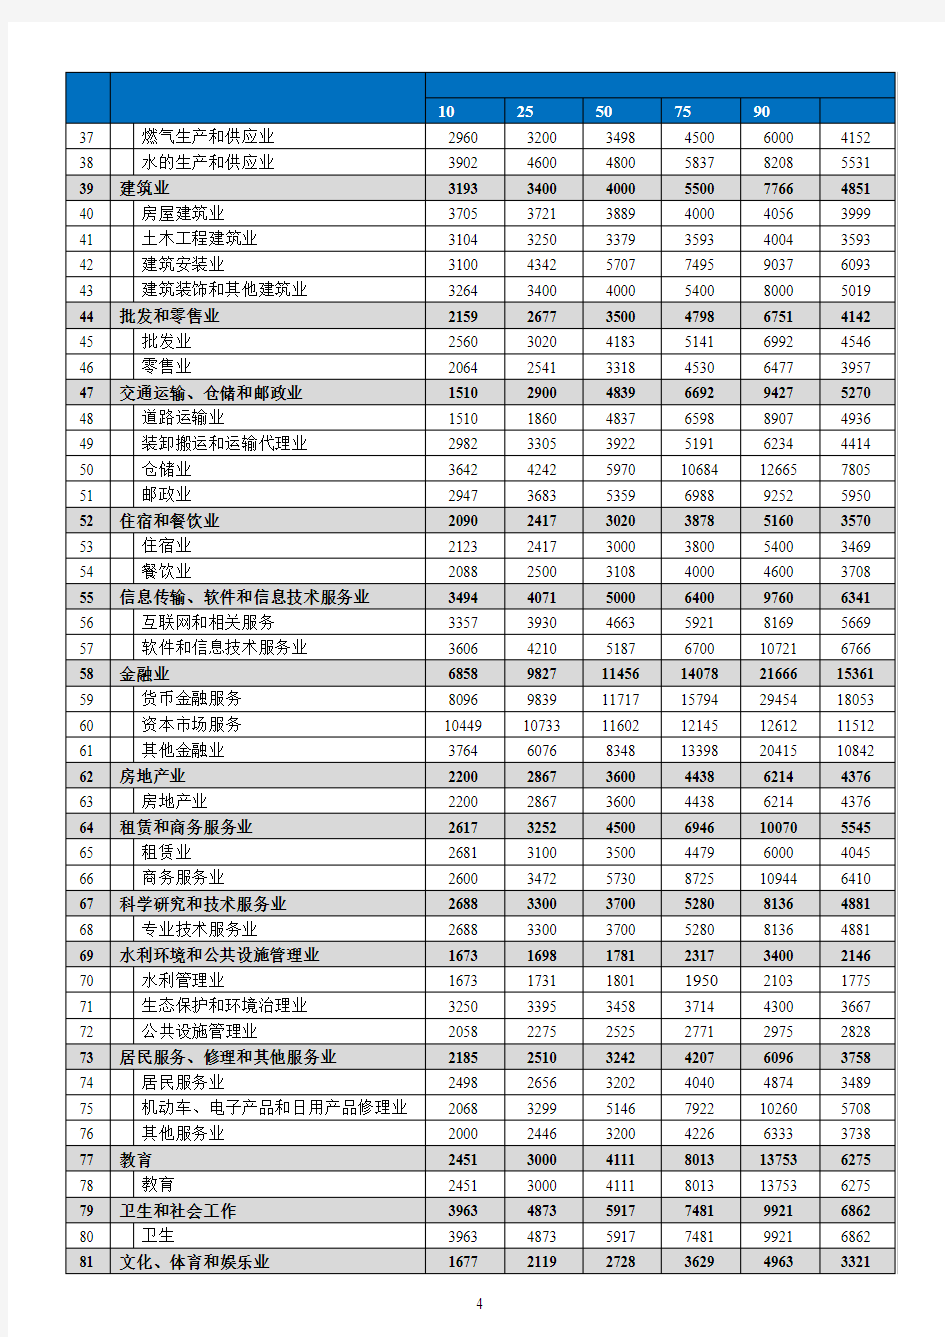 东莞市2018年劳动力市场工资指导价位